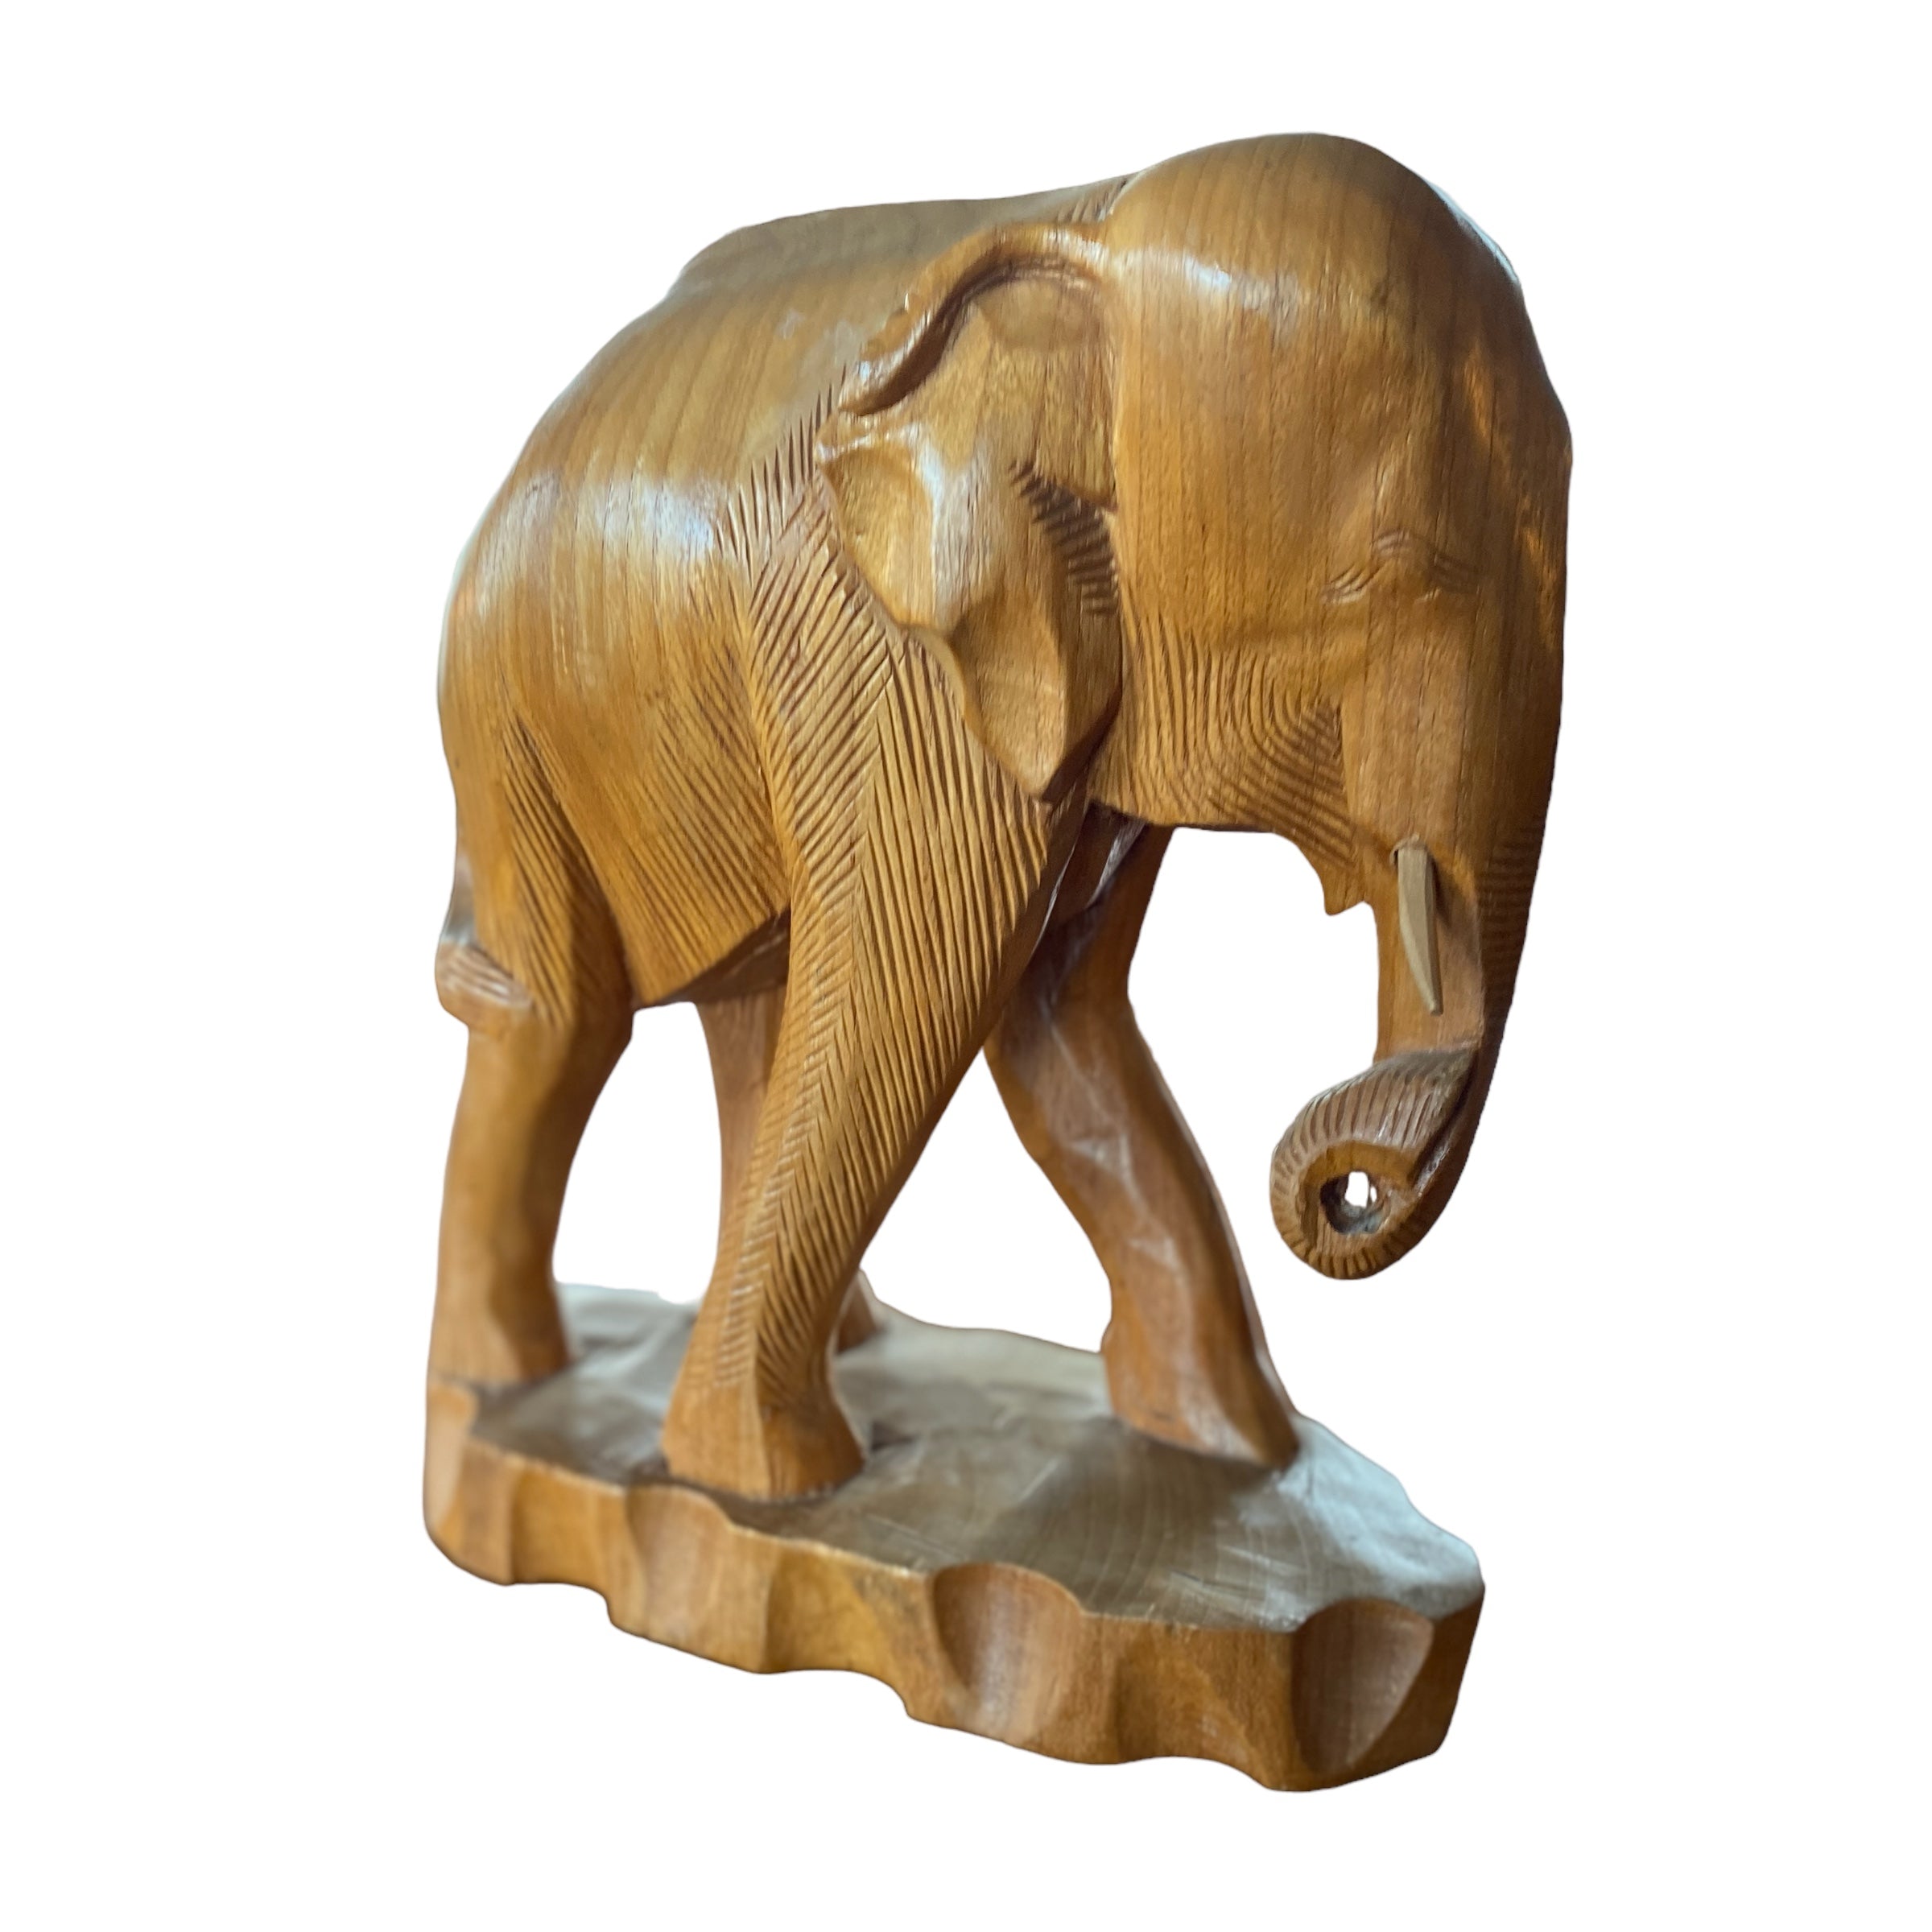 Body Of Elephant Sculpture Teak